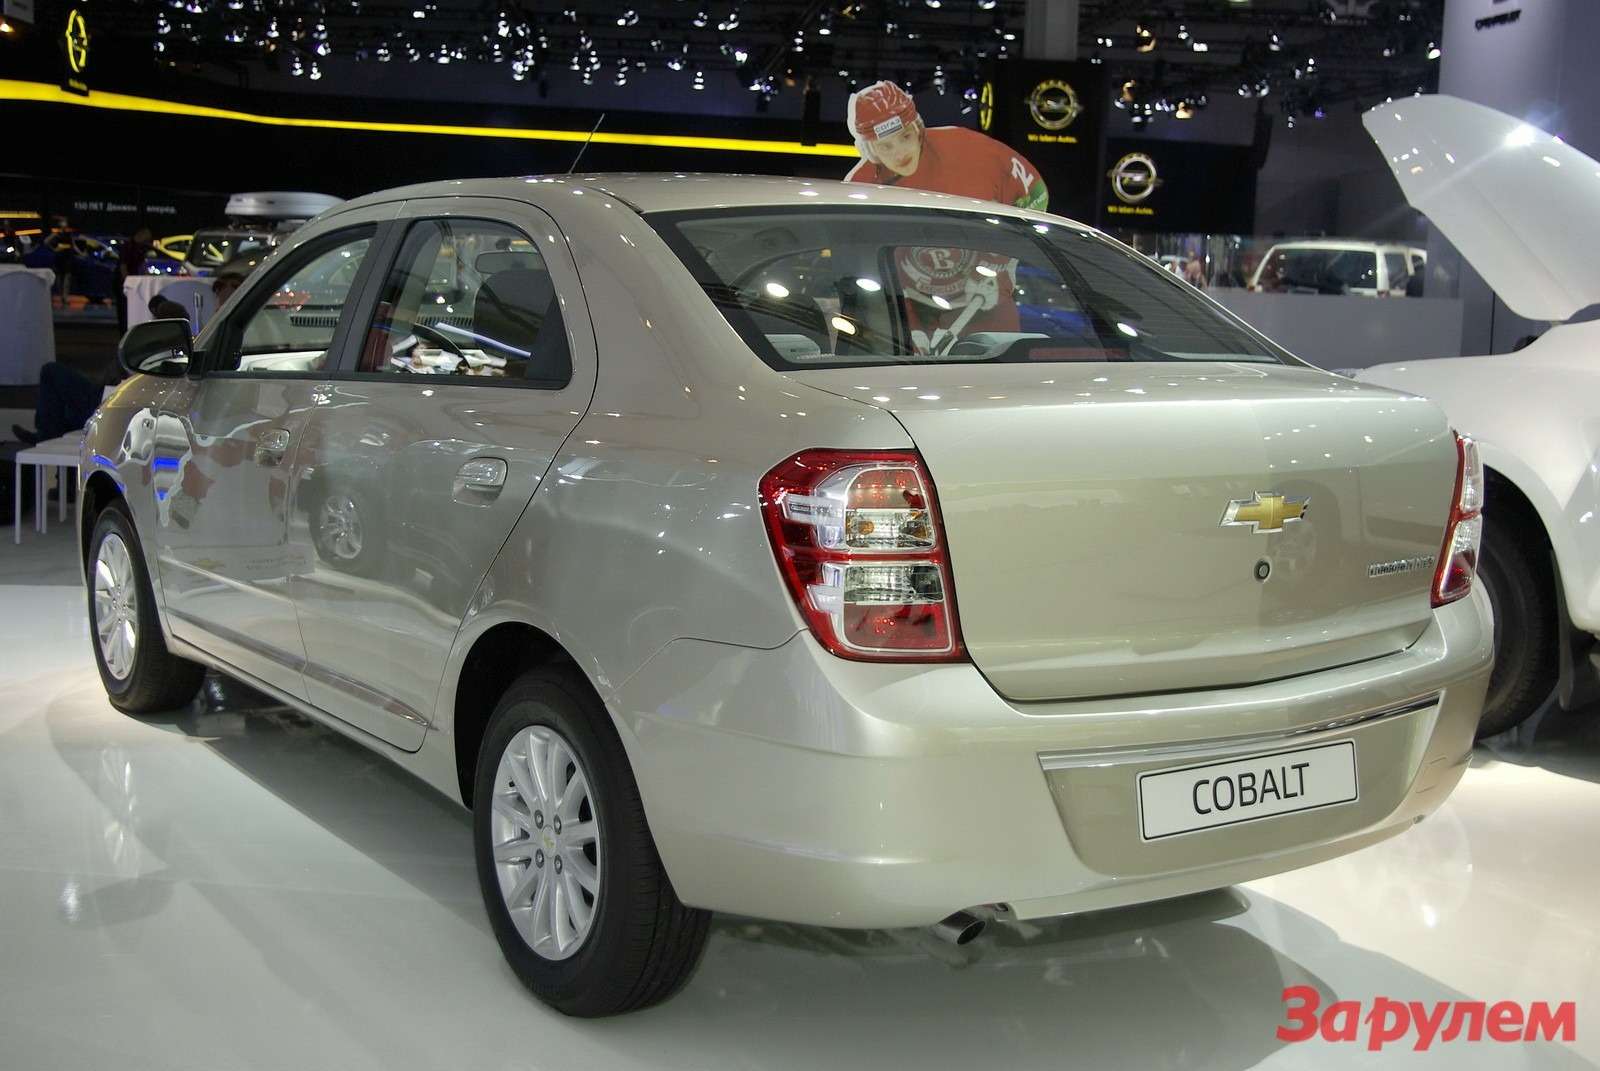 Cobalt Chevrolet Daewoo